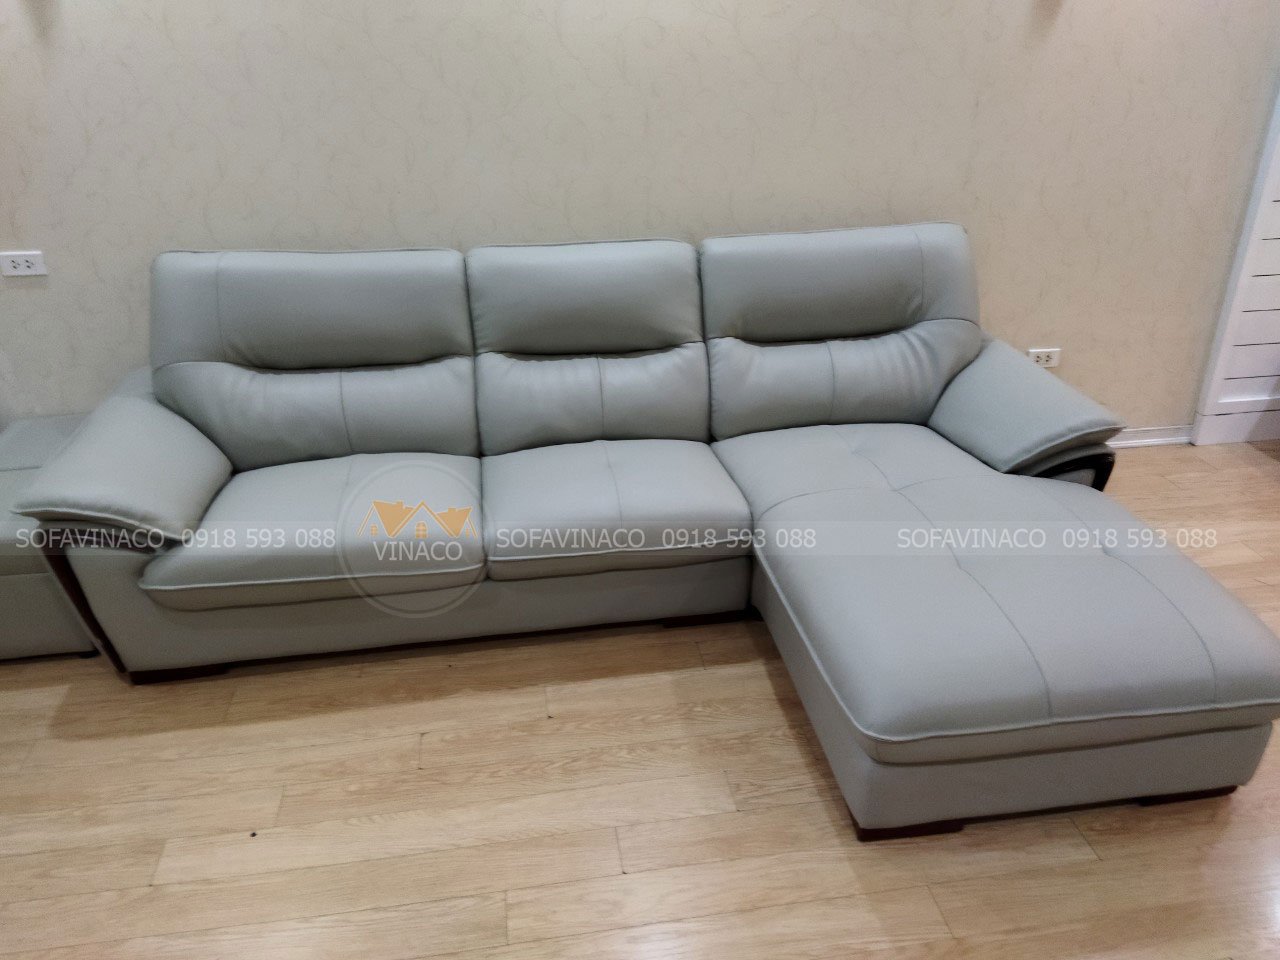 Chọn sofa cho người cao tuổi